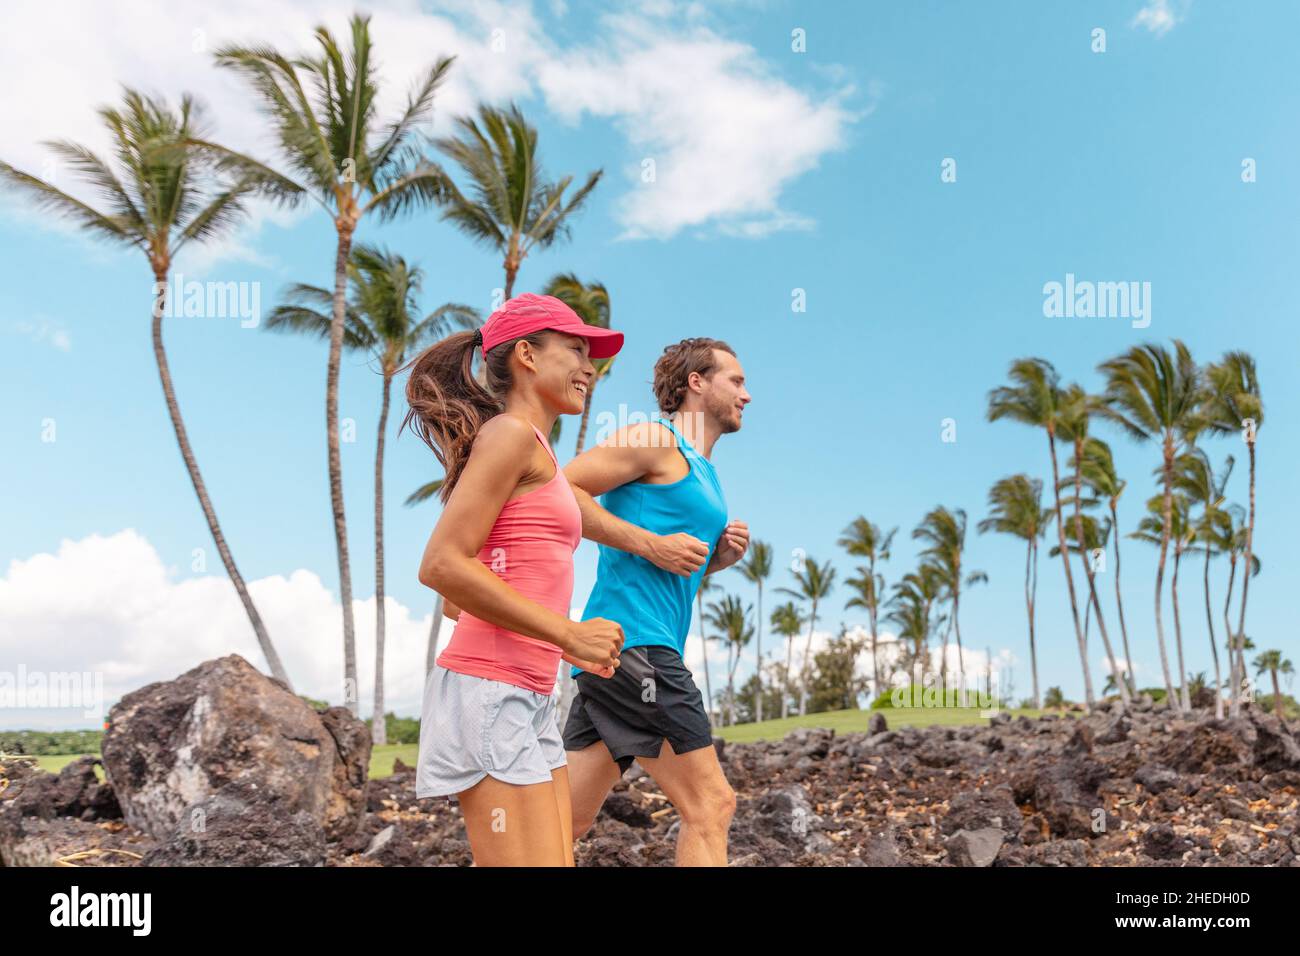 Les coureurs d'exercice de forme physique couple le style de vie de course.Des personnes en bonne santé font du jogging ensemble dans le parc d'été en plein air, les athlètes s'entraînent au cardio à Hawaï Banque D'Images